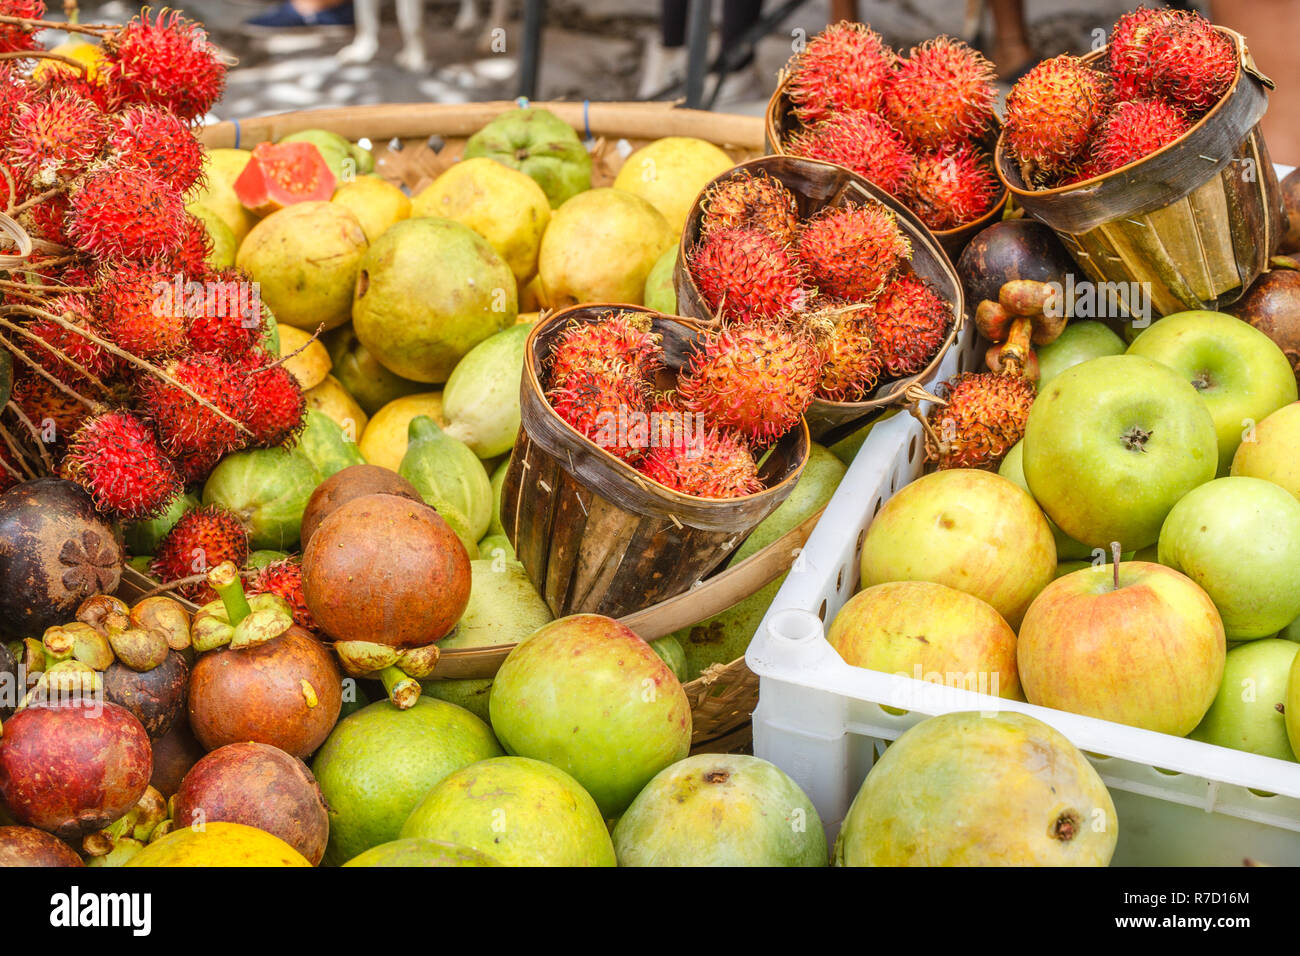 Les pommes, les mangoustans et ramboutans à un marché d'agriculteurs traditionnels, Bali, Indonésie. Banque D'Images